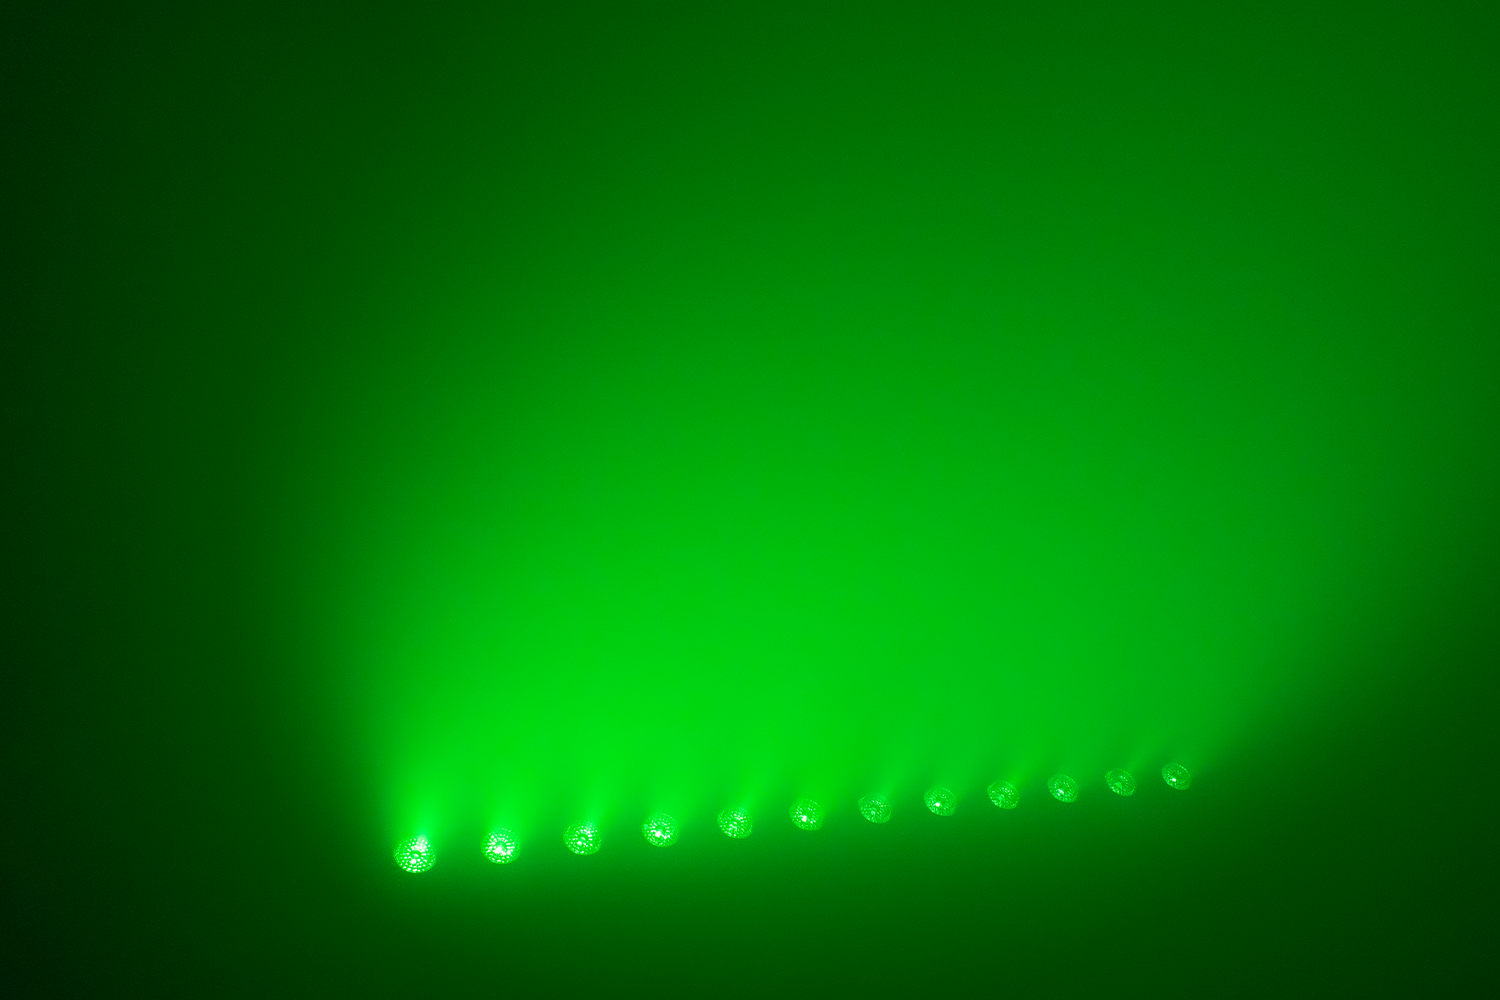 Event Lighting Effect Green_PIXBAR12X12W 1500 x 1000 px